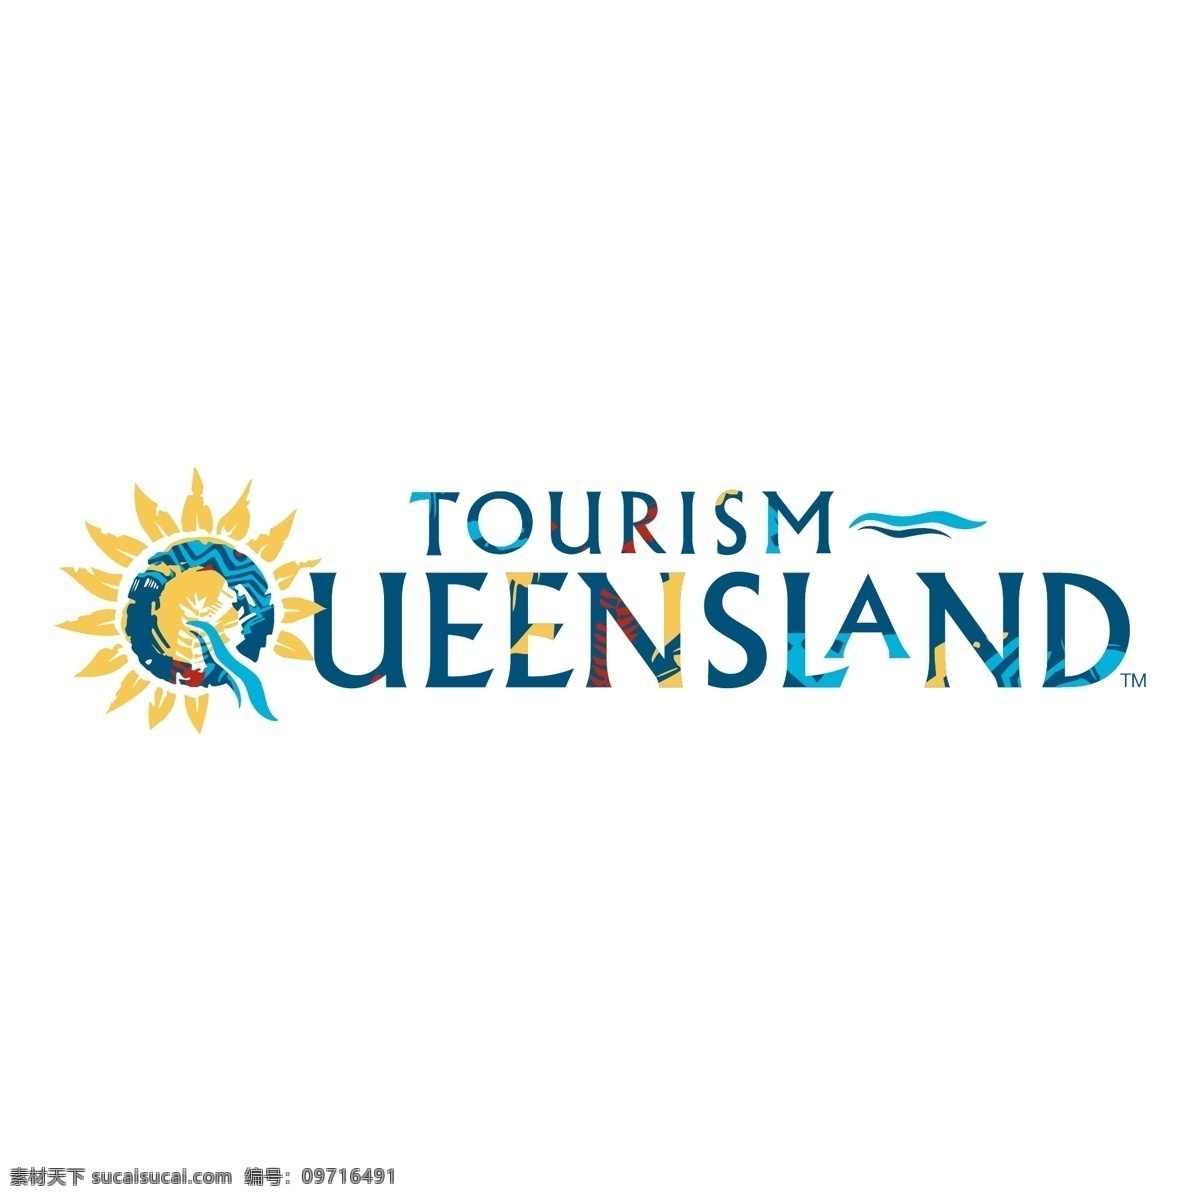 昆士兰 旅游局 免费 旅游 标志 psd源文件 logo设计